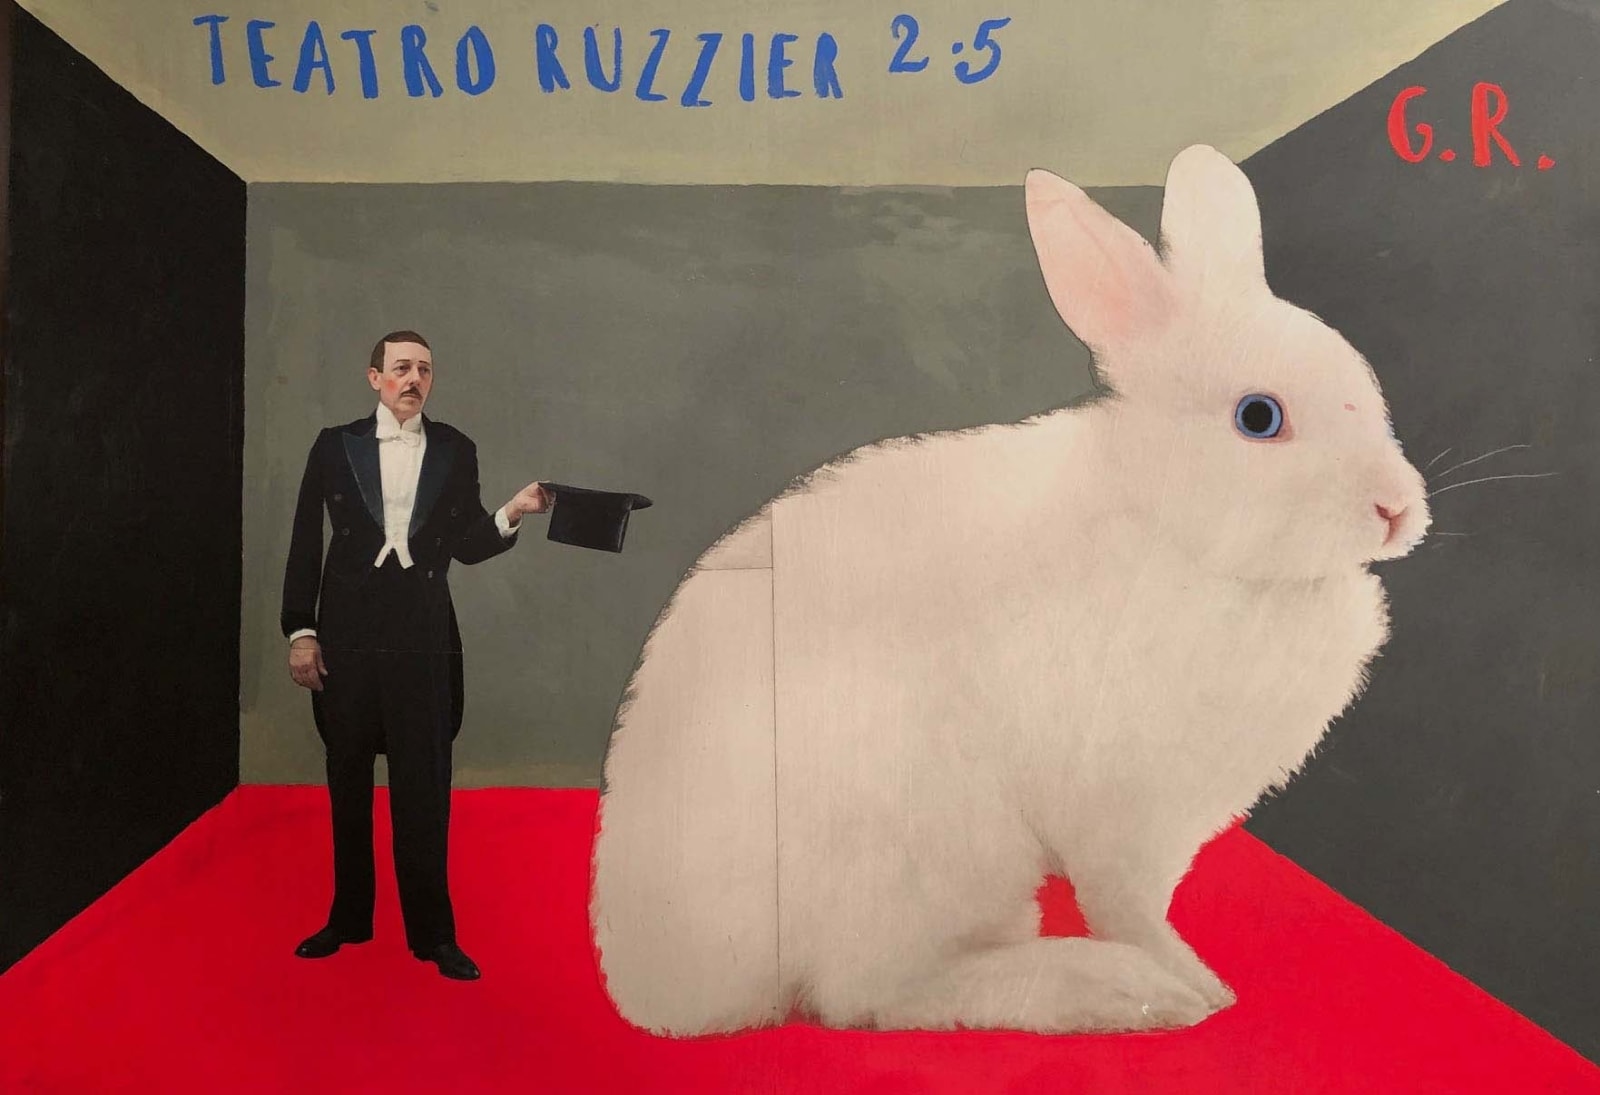 Paolo Ventura, Teatro Ruzzier, 2019